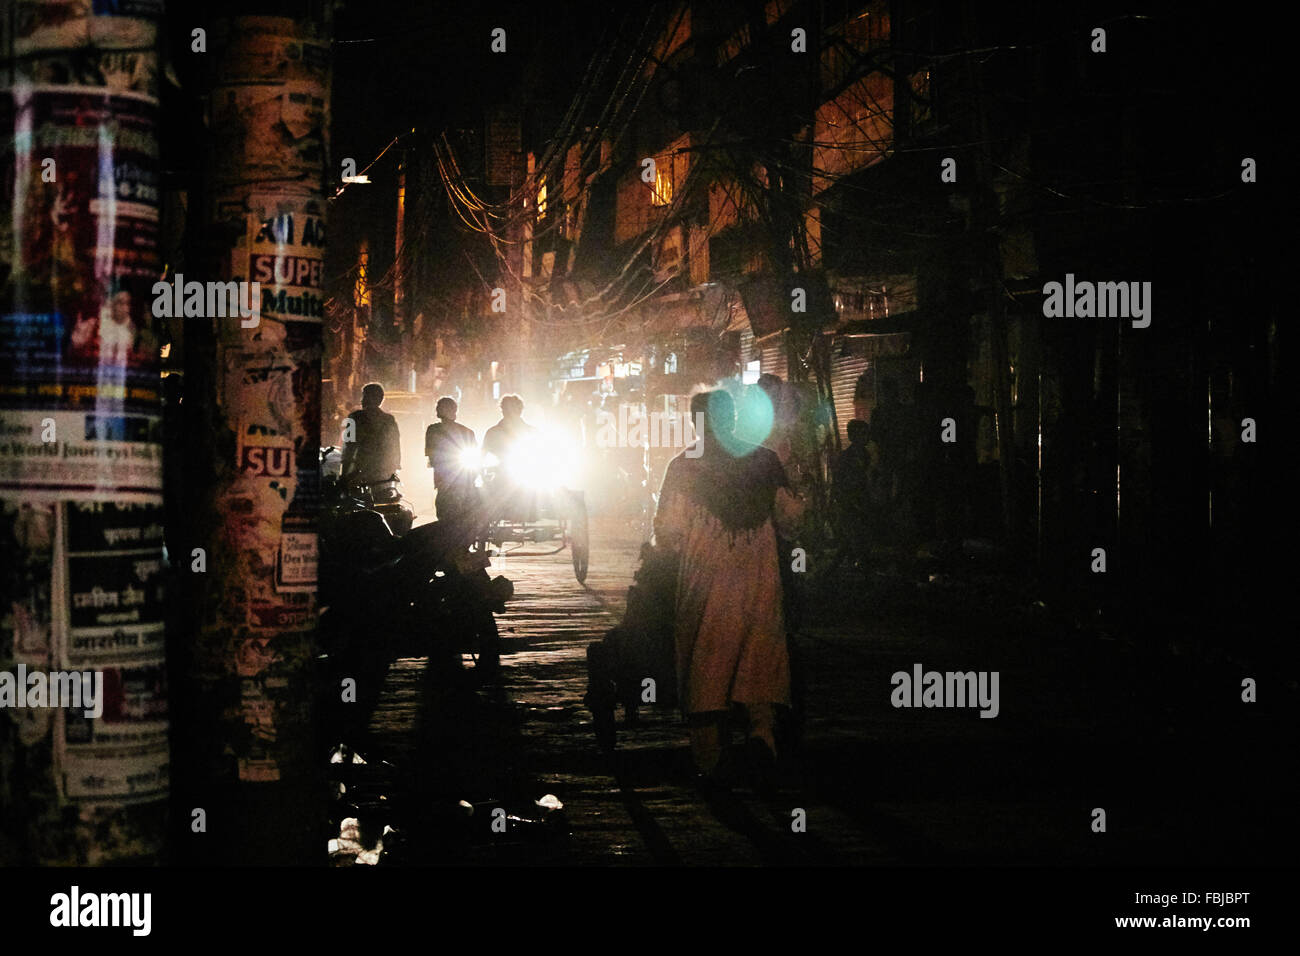 Nacht, Gegenlicht, Rickshaww, dunkle Gasse, 4 Personen, Werbung, Straßen-Delhi, Indien Stockfoto